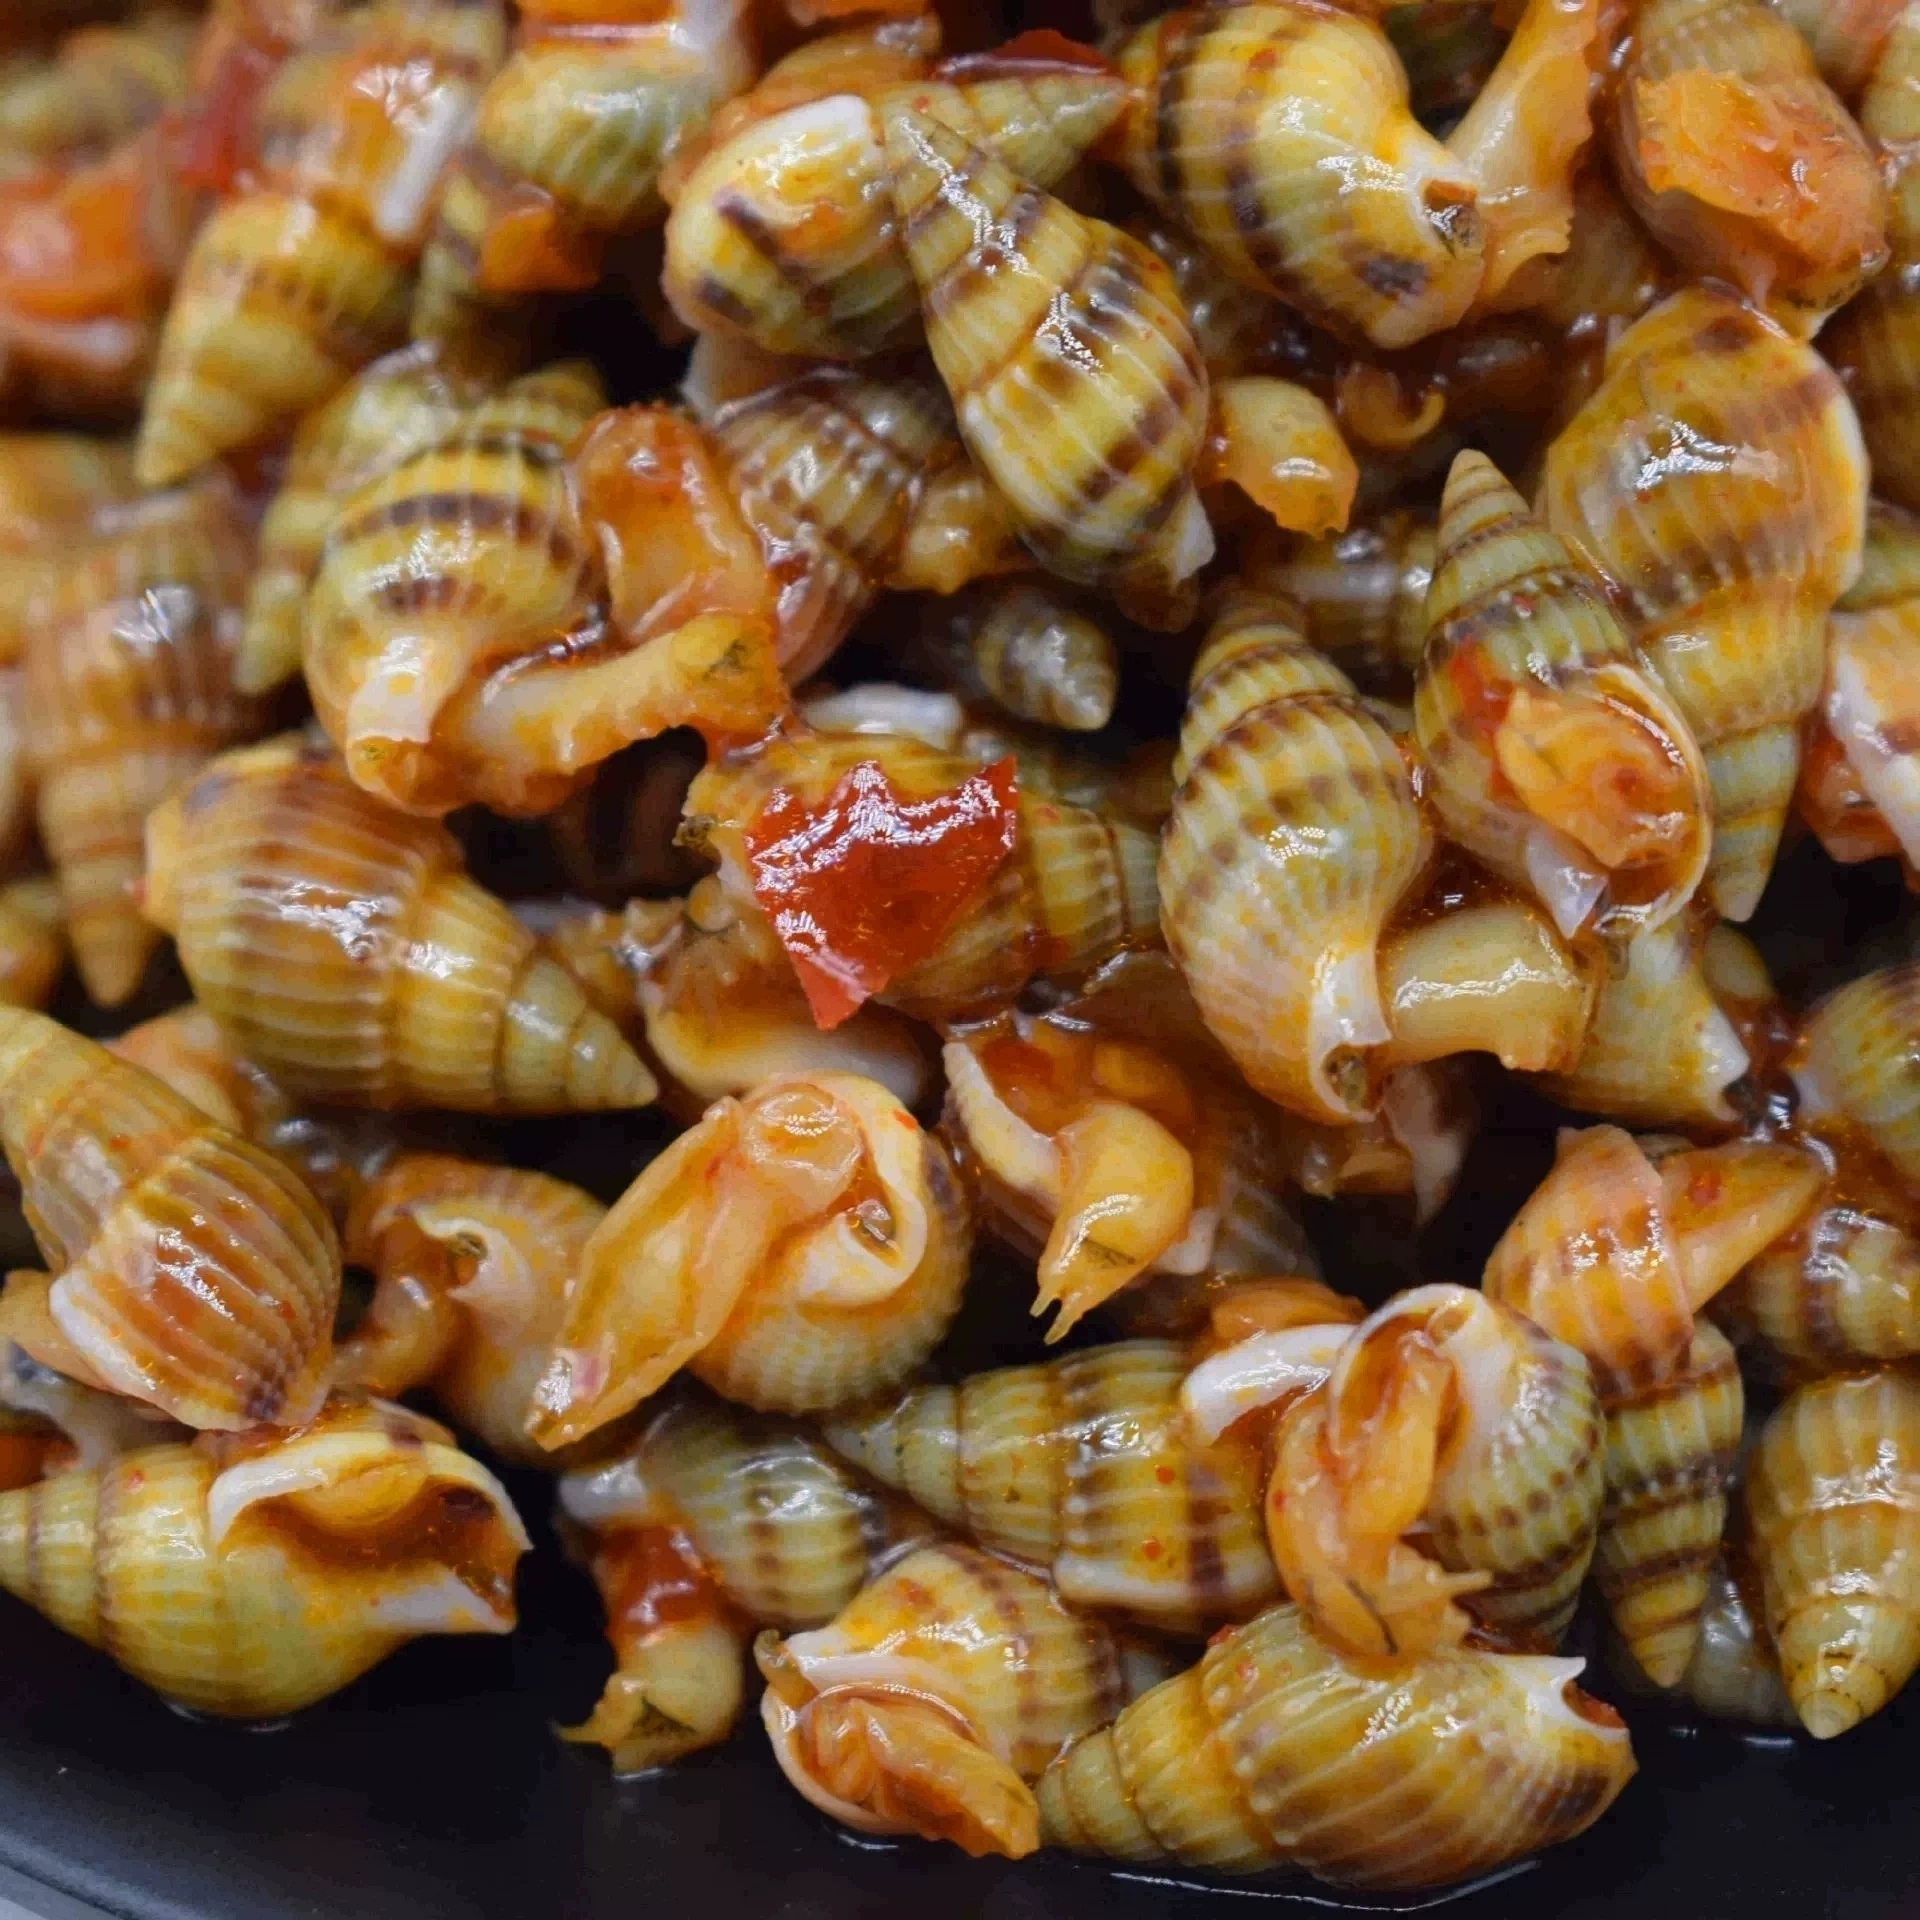 青岛海瓜子300g即食熟食罐装新鲜麻辣小海鲜罐头小海螺丝海锥钉螺